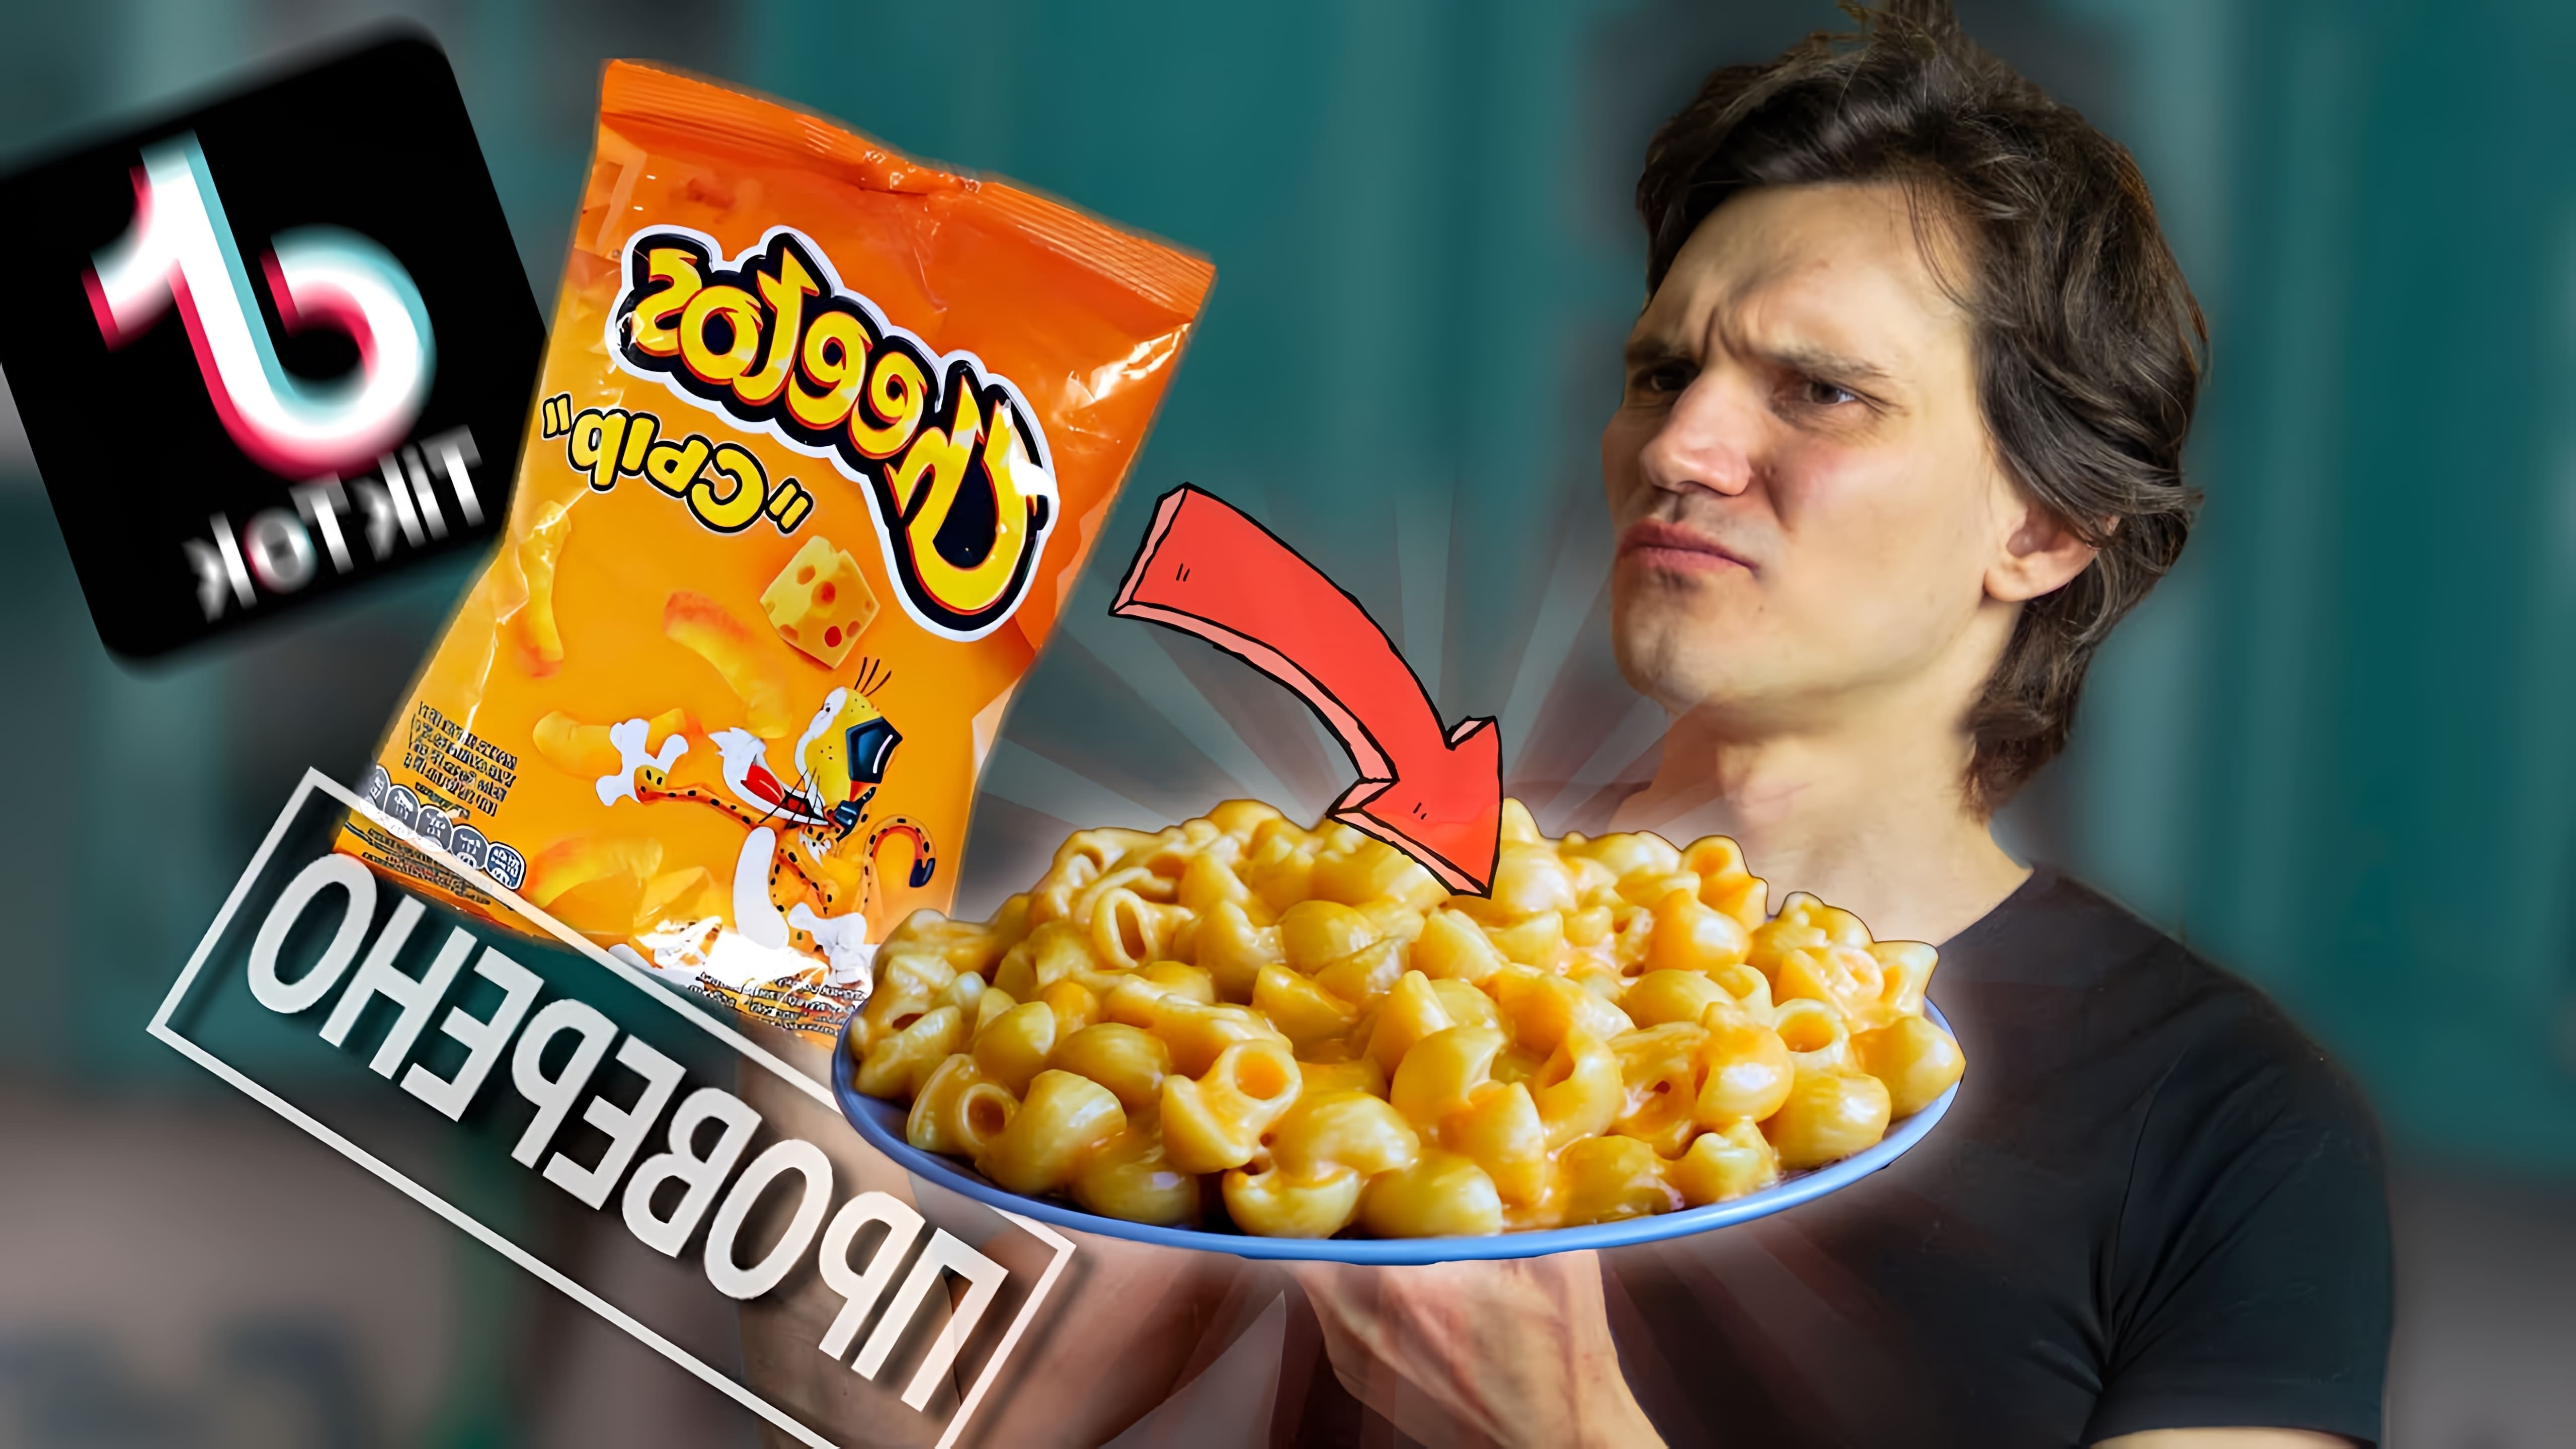 В данном видео проверяется рецепт макарон с чипсами Cheetos, который стал очень популярным в интернете